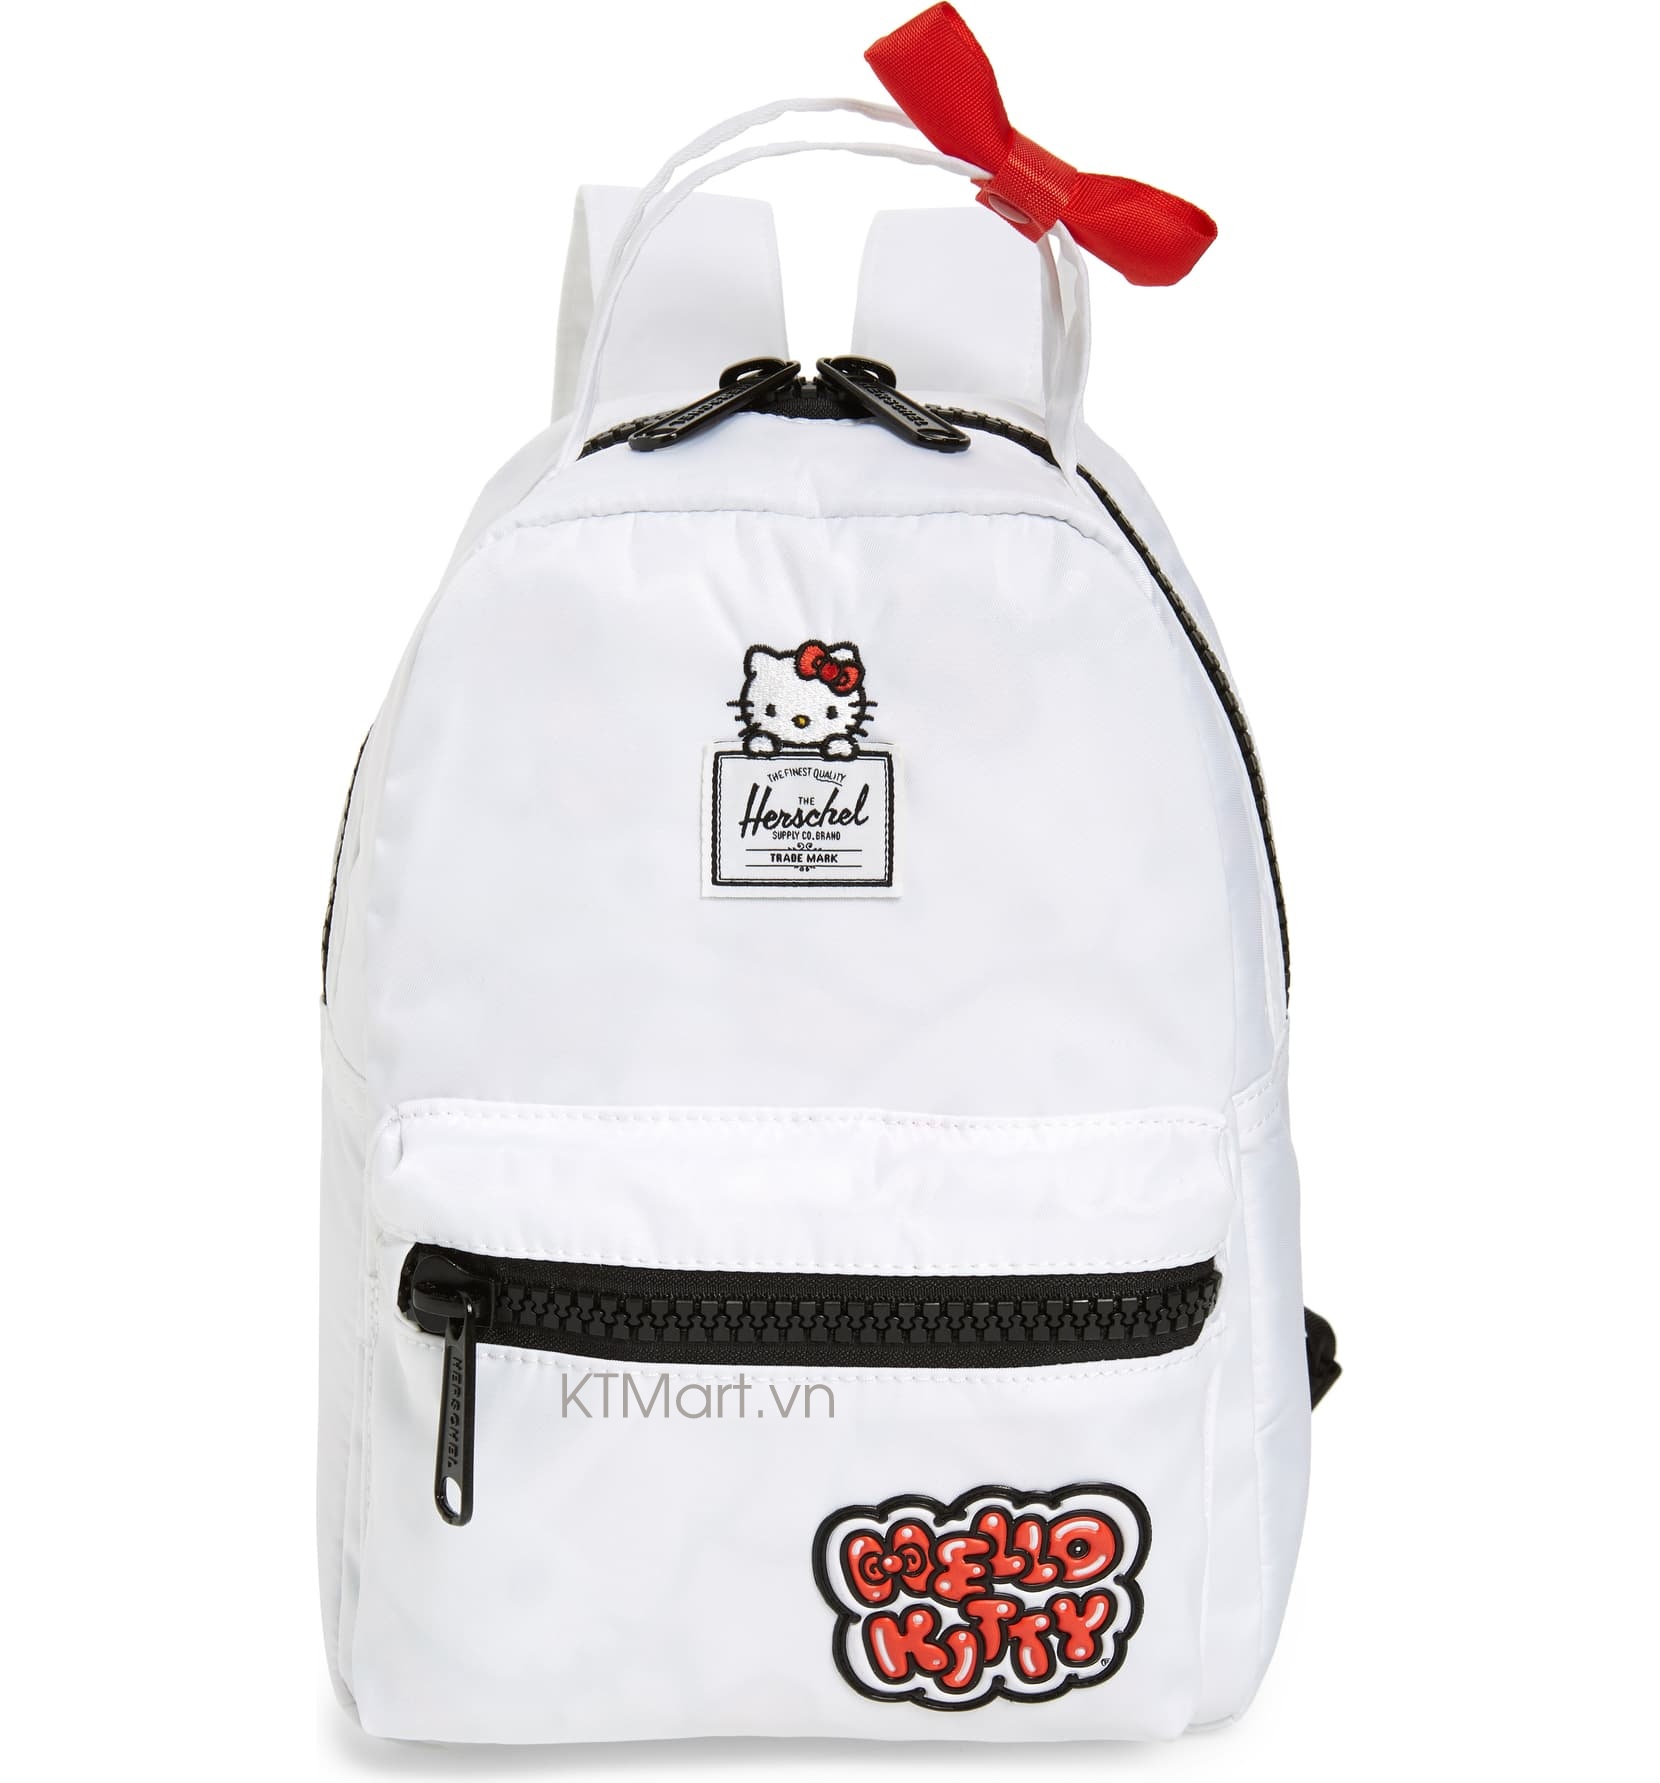 Herschel Hello Kitty Nova Mini Backpack 10501-03063 Herschel ktmart 0